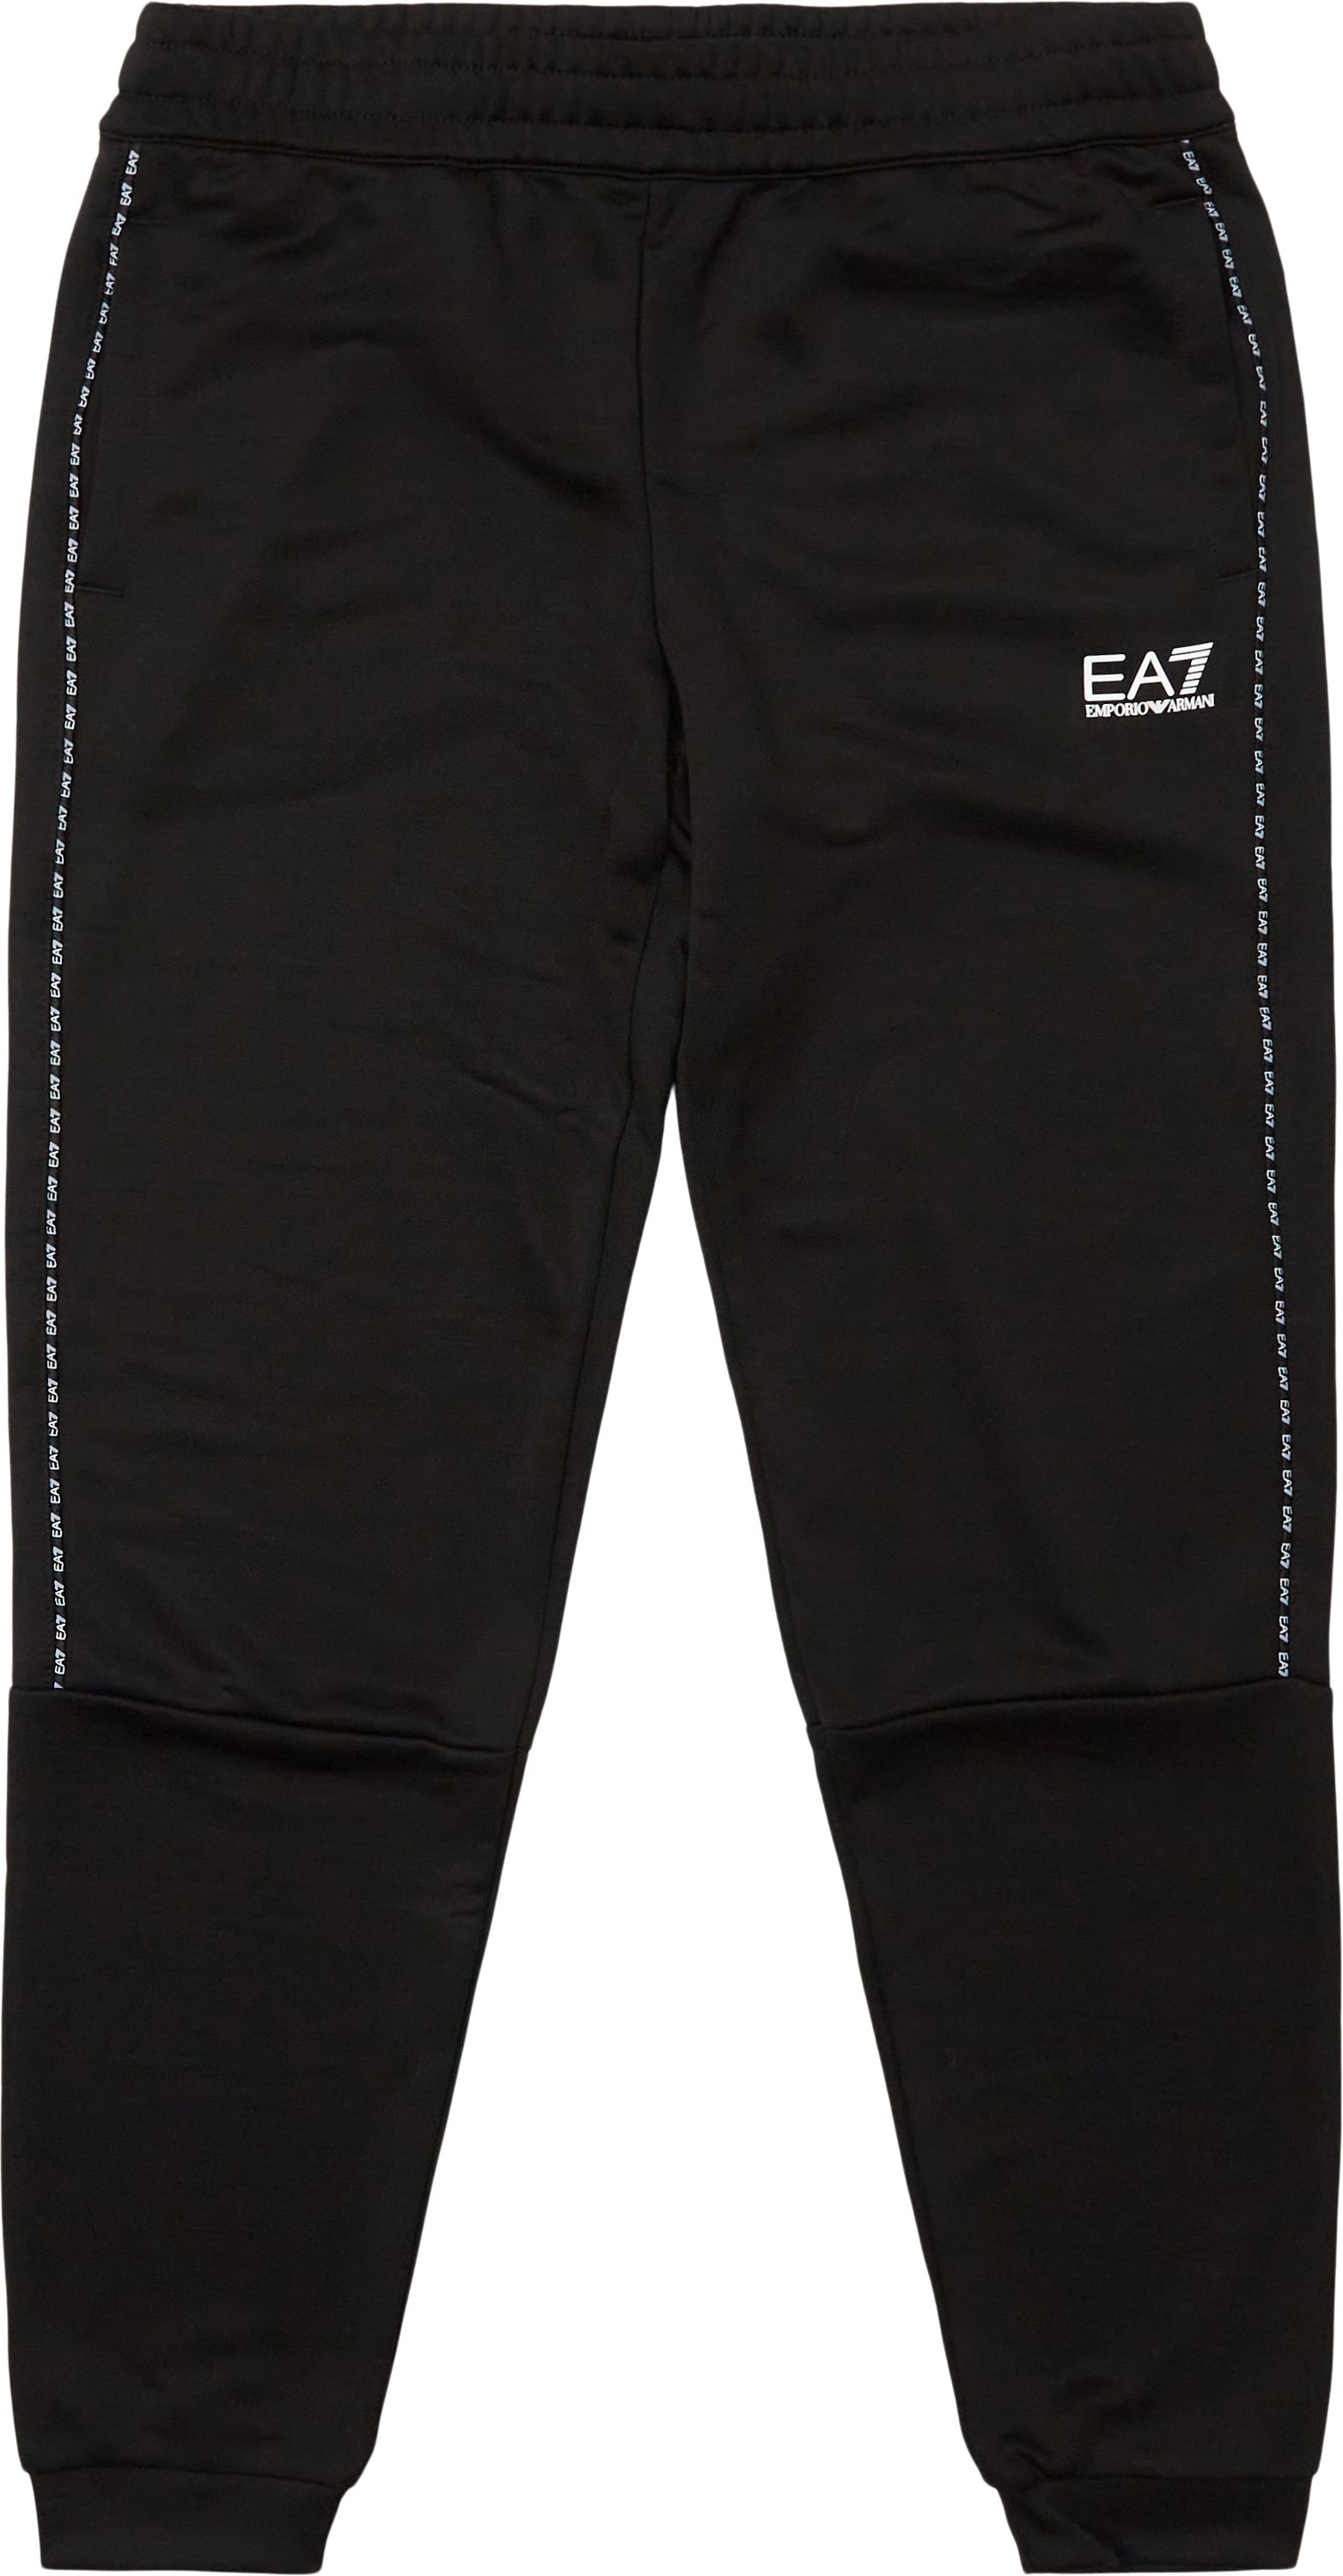 Pjhbz-3lpp74 Sweatpant - Trousers - Regular fit - Black